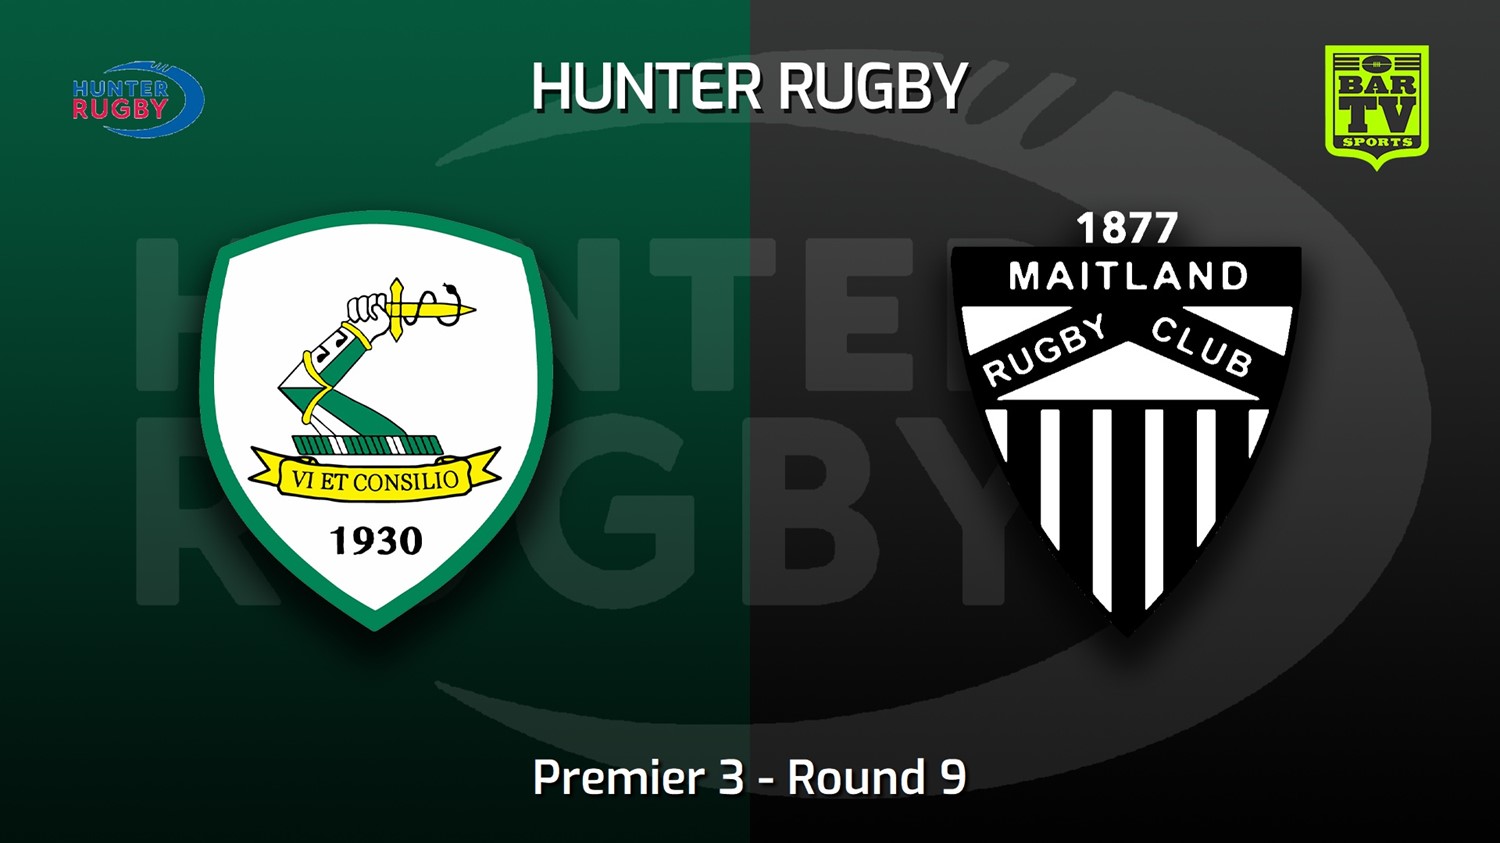 220625-Hunter Rugby Round 9 - Premier 3 - Merewether Carlton v Maitland Slate Image